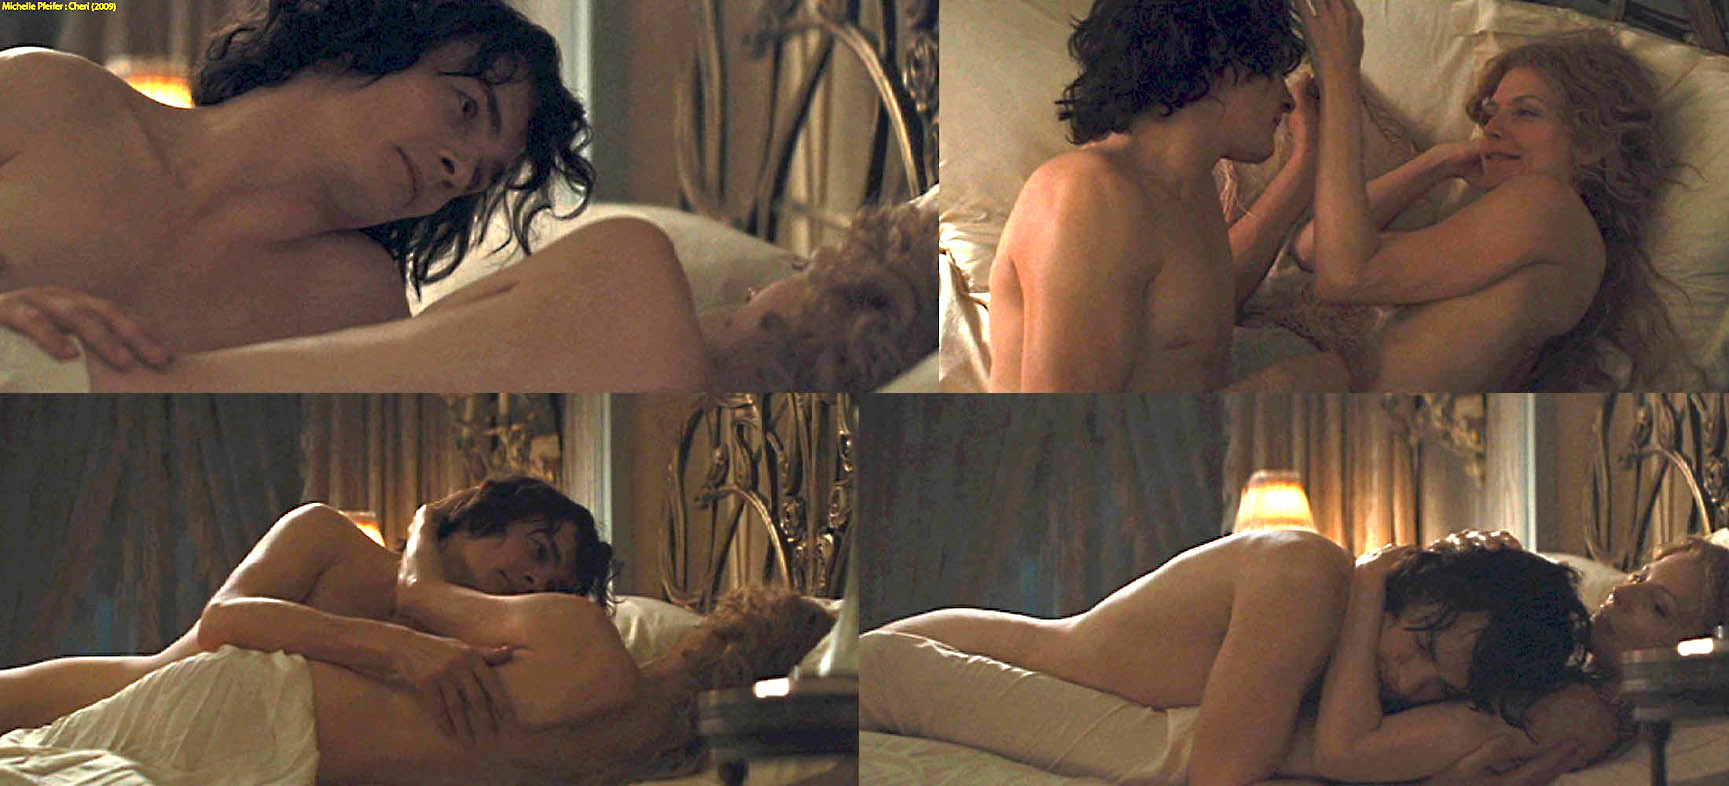 Michelle pfeiffer nude